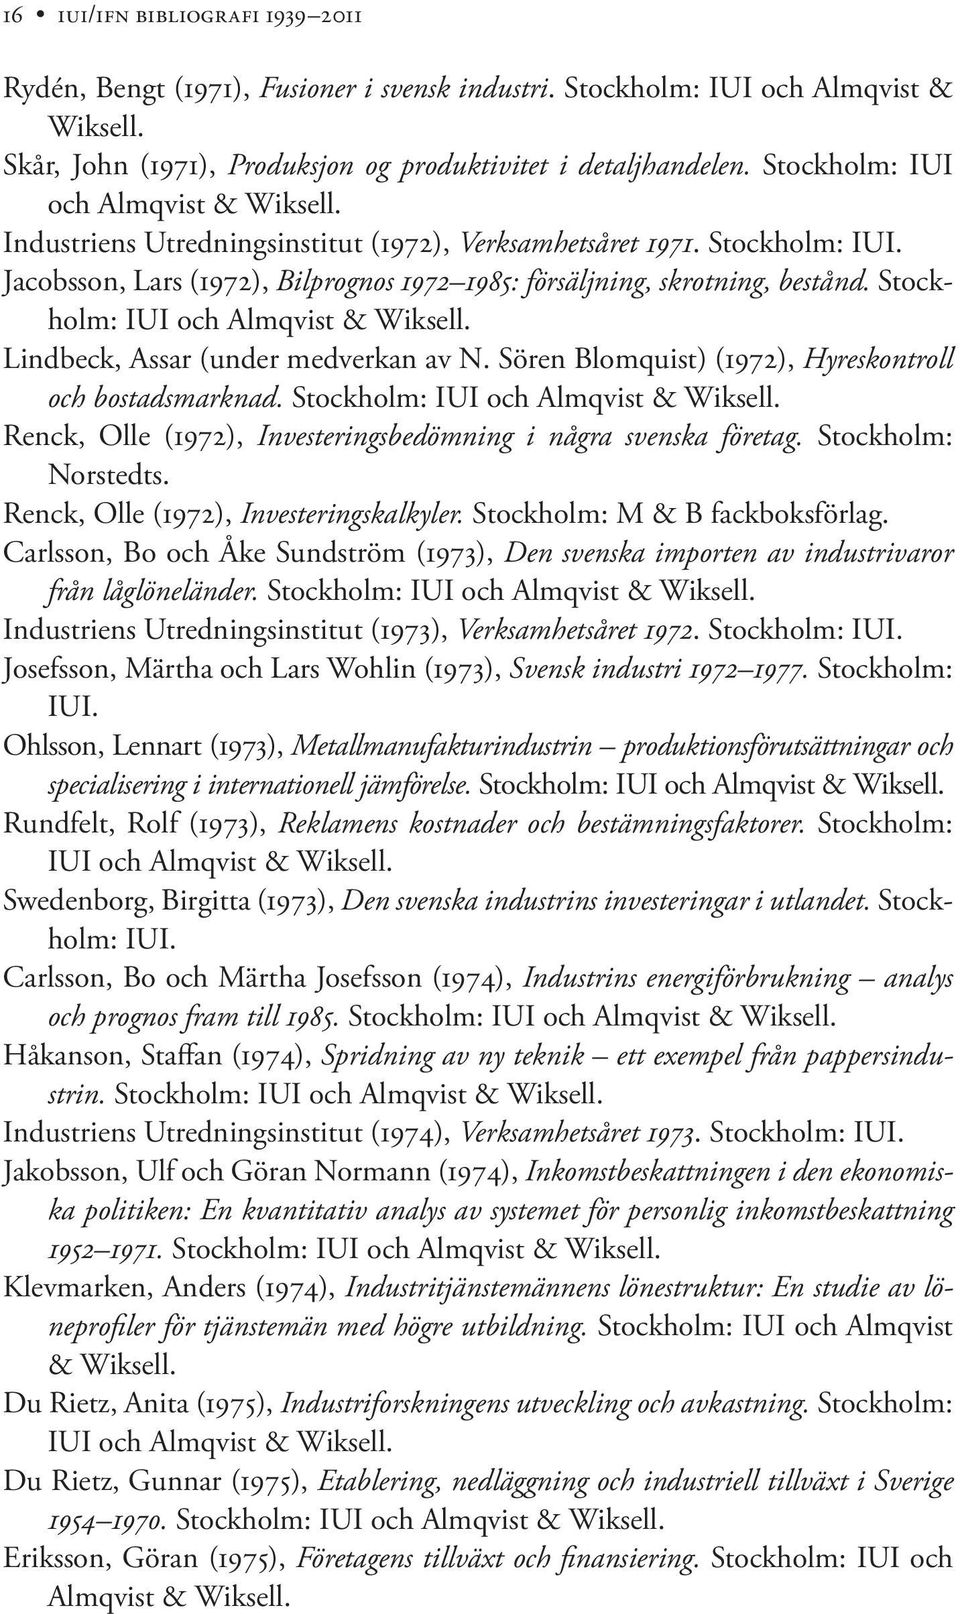 Stockholm: IUI och Almqvist & Wiksell. Lindbeck, Assar (under medverkan av N. Sören Blomquist) (1972), Hyreskontroll och bostadsmarknad. Stockholm: IUI och Almqvist & Wiksell.